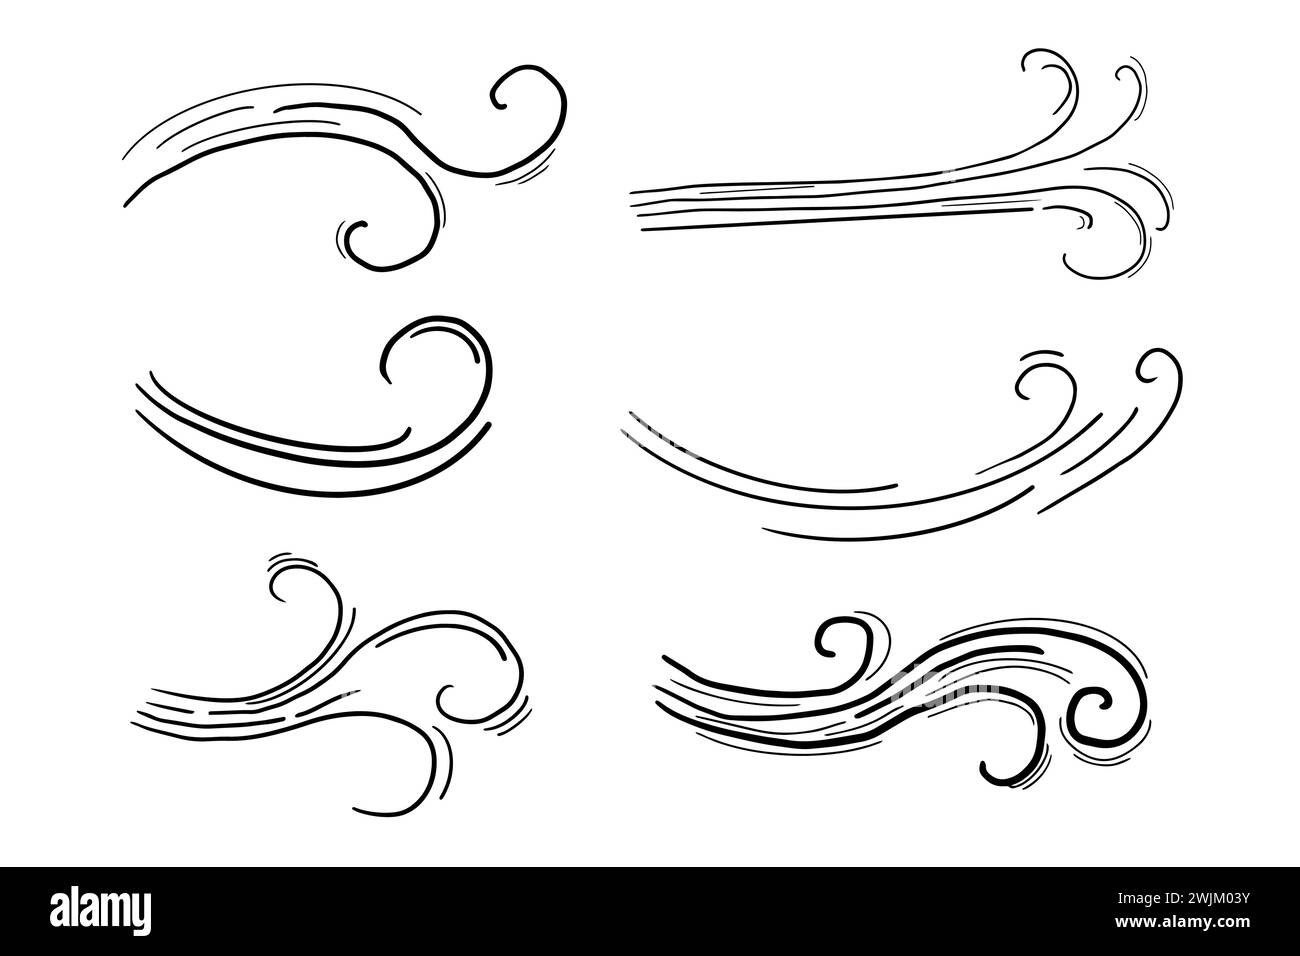 Windbewegung Doodle Line Swirl Hand gezeichneter Dampf Wetterstoß isoliert auf weißem Hintergrund. Element für die Atmosphäre. Vektorabbildung Stock Vektor